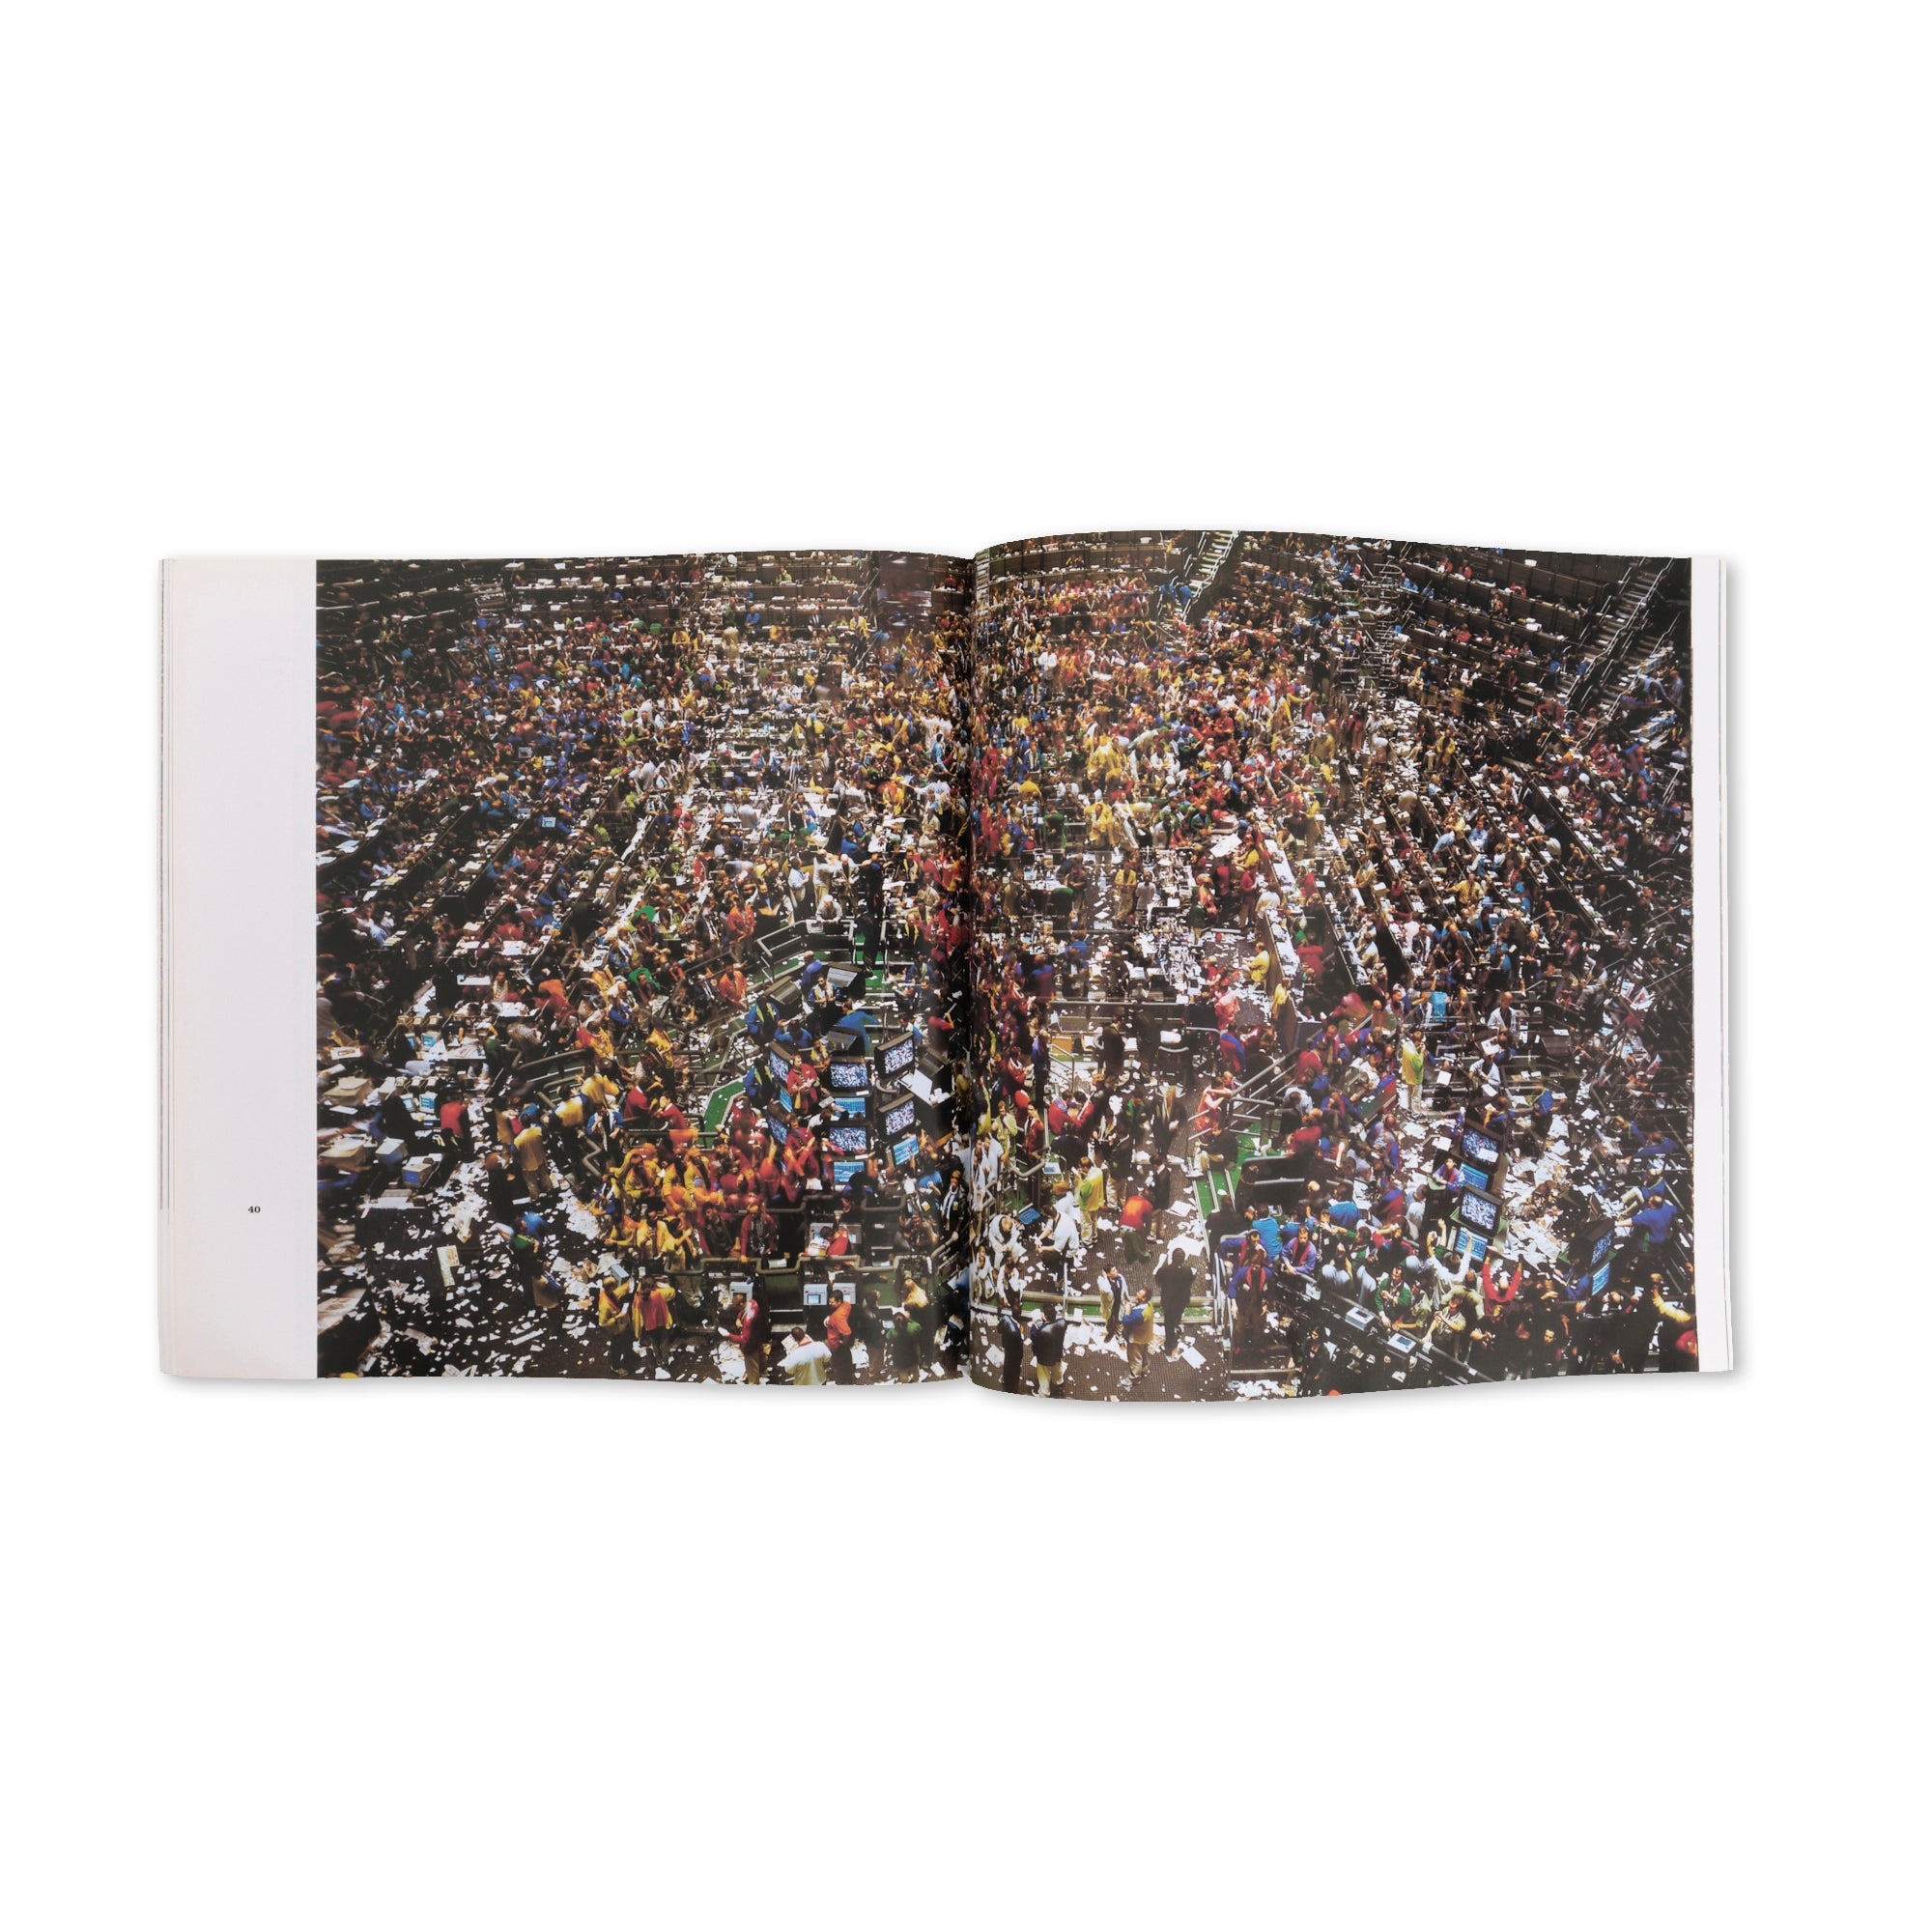 Andreas Gursky — Centre Pompidou